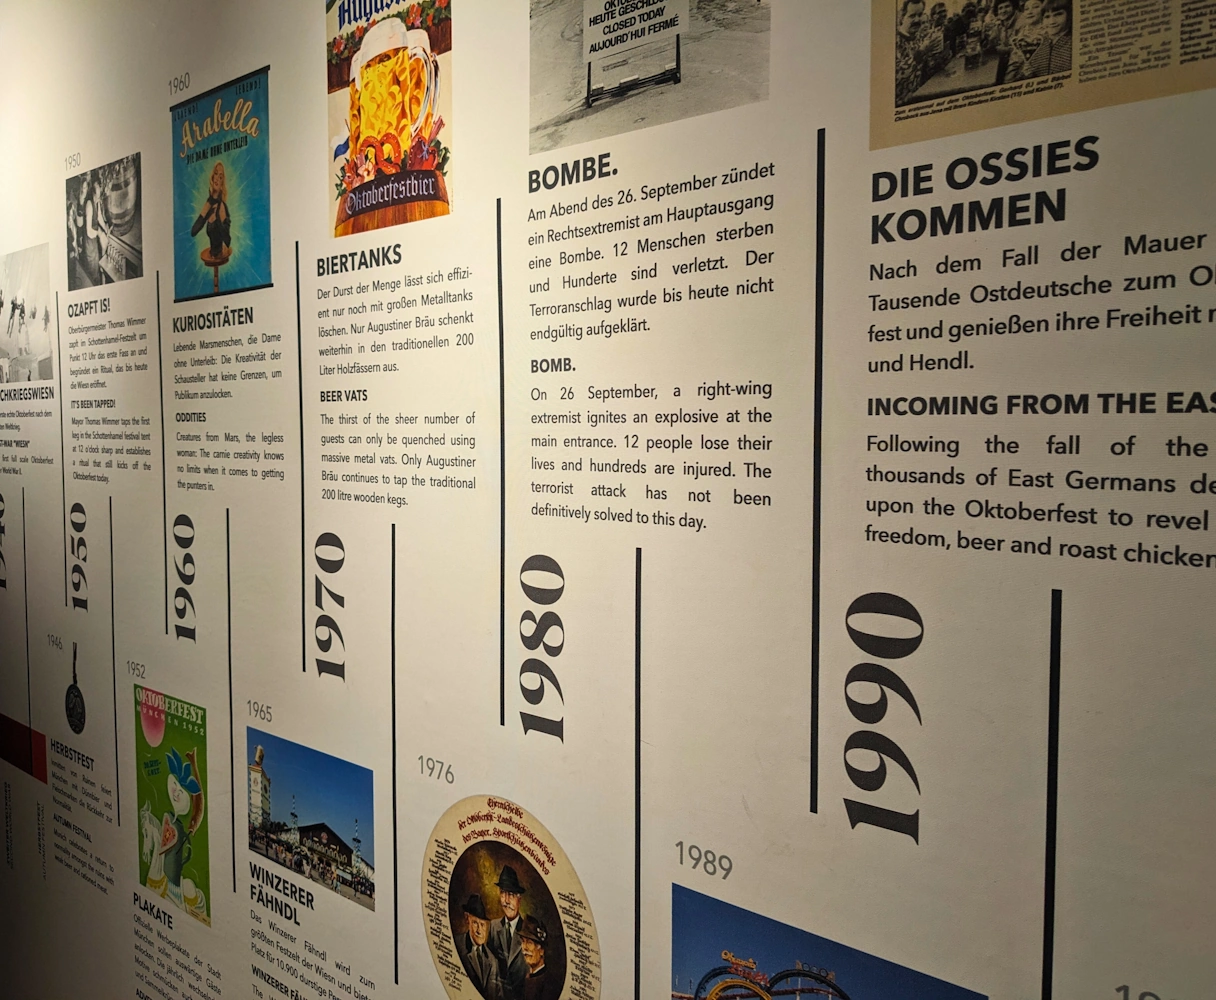 Bier & Oktoberfestmuseum Zeitstrahl der wichtigsten Ereignisse in der Geschichte von München & dem Oktoberfest